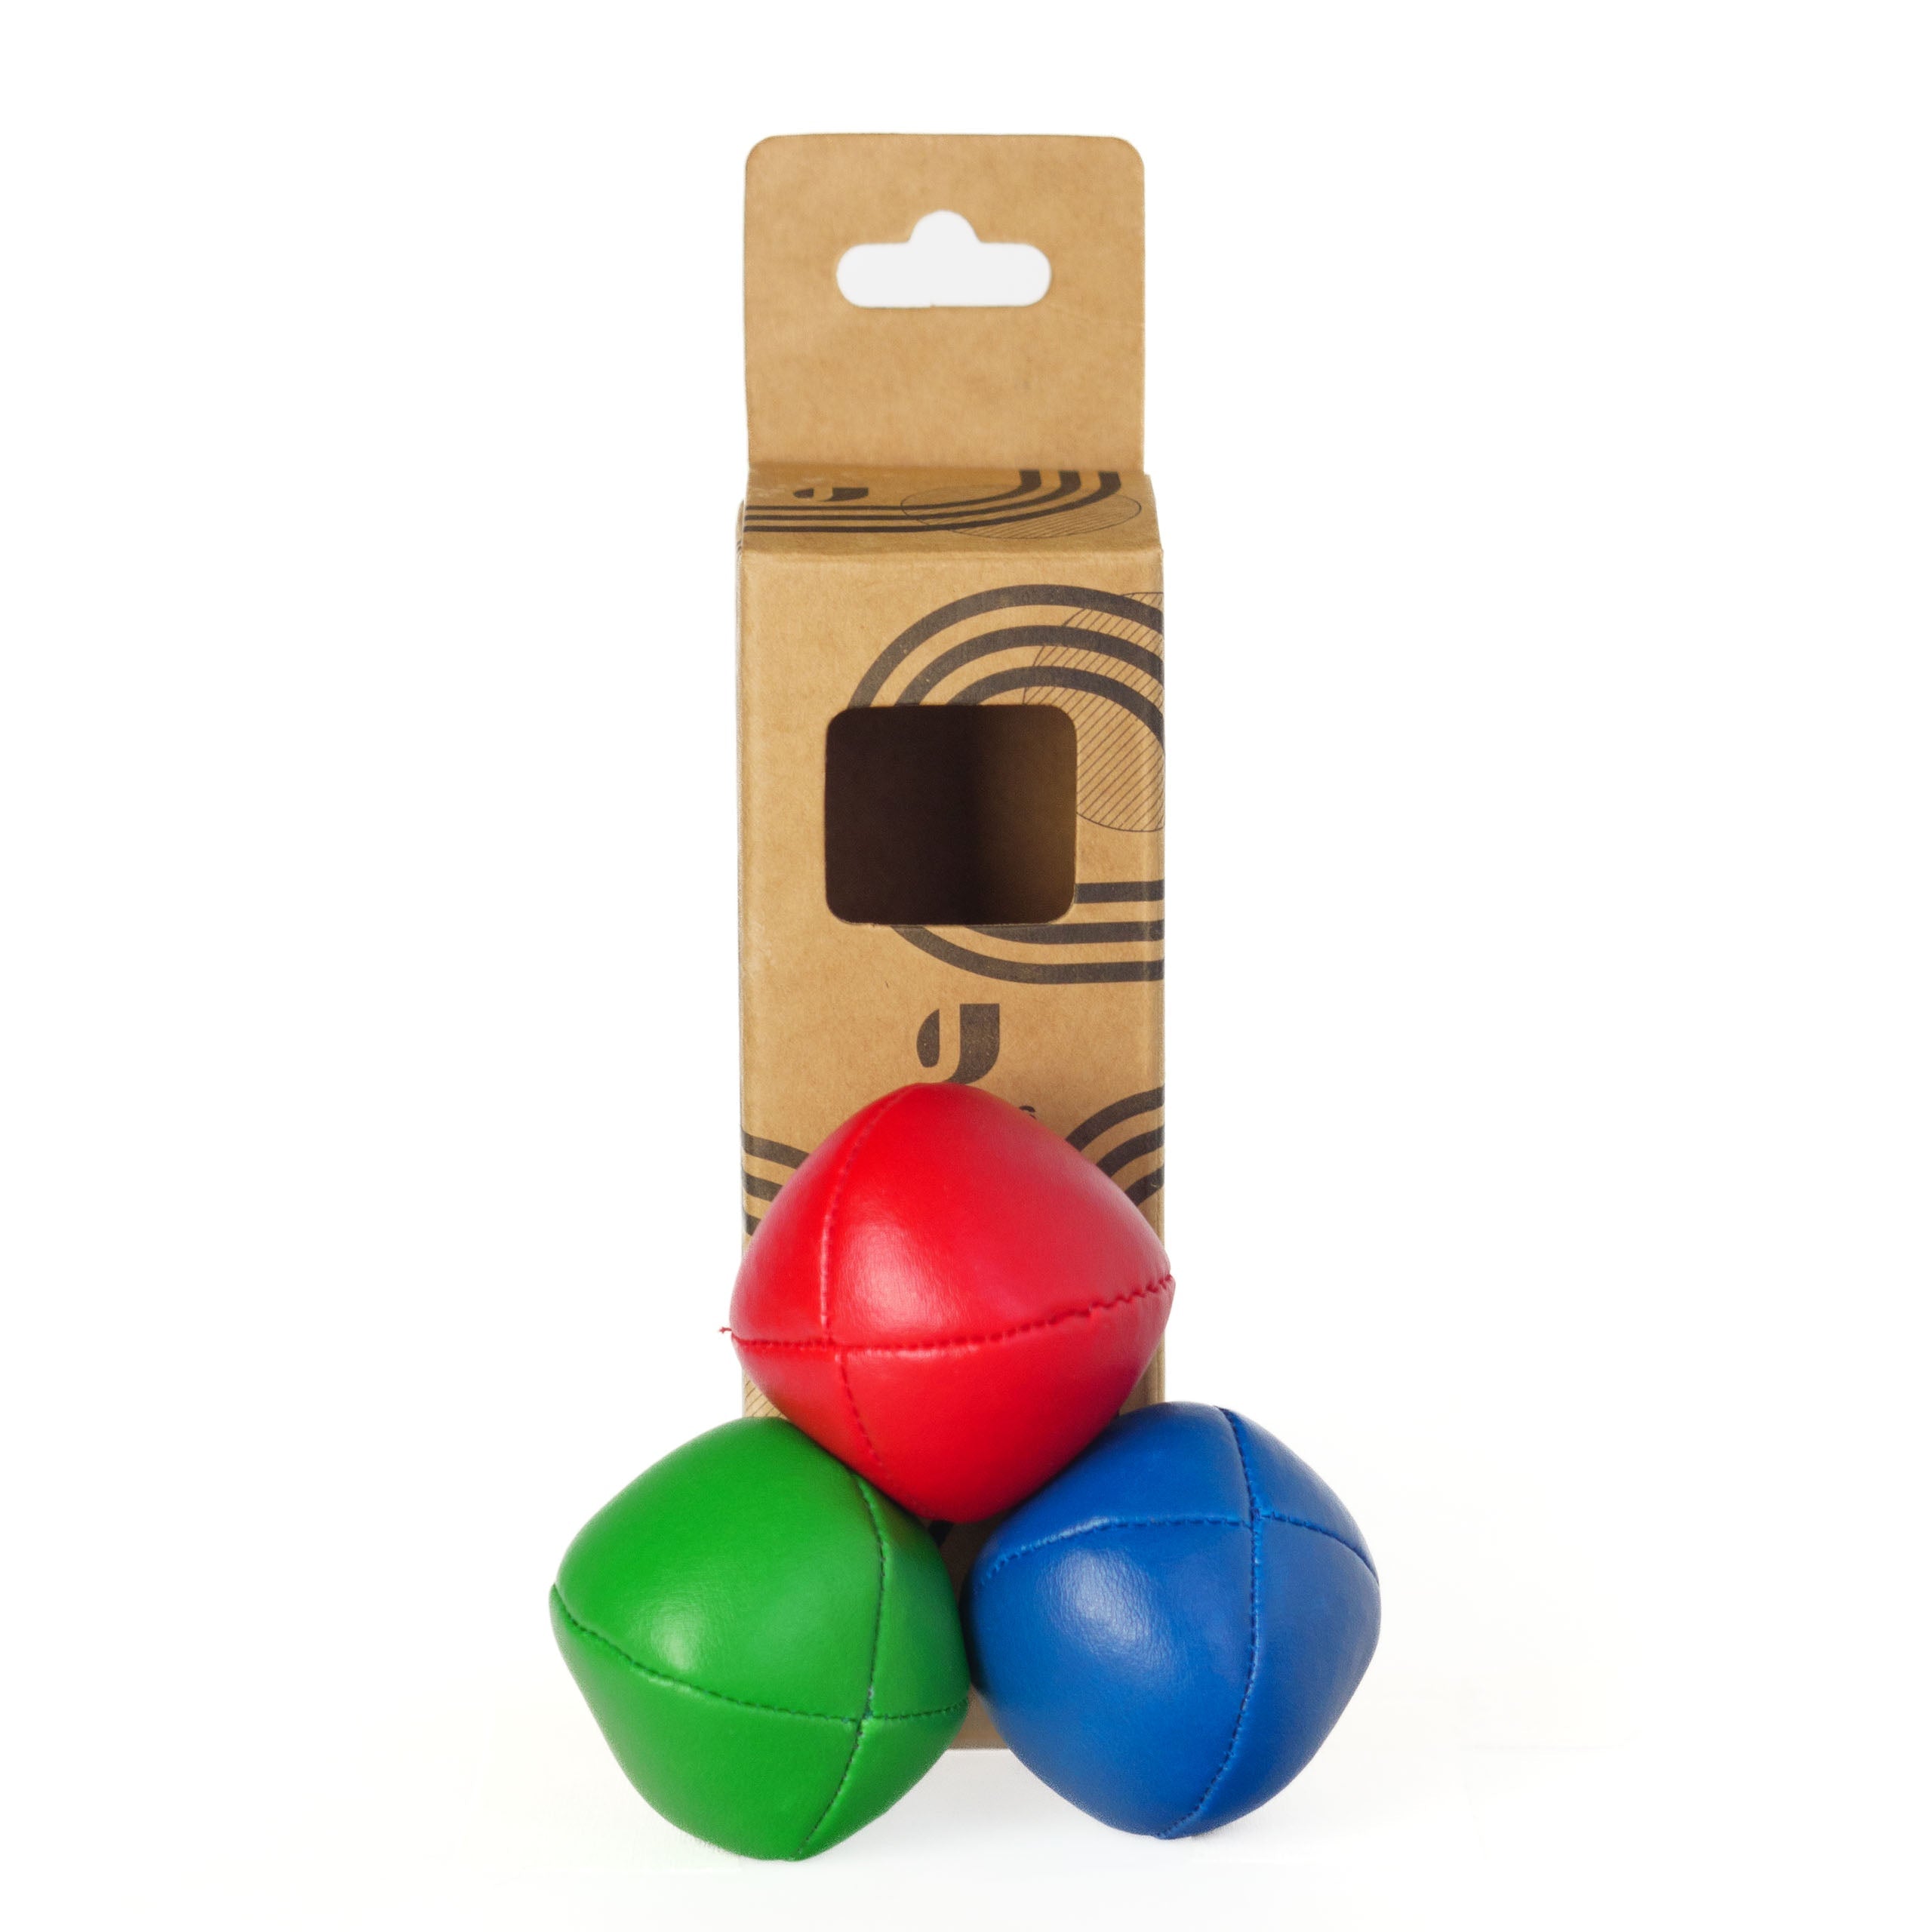 3 different colour balls